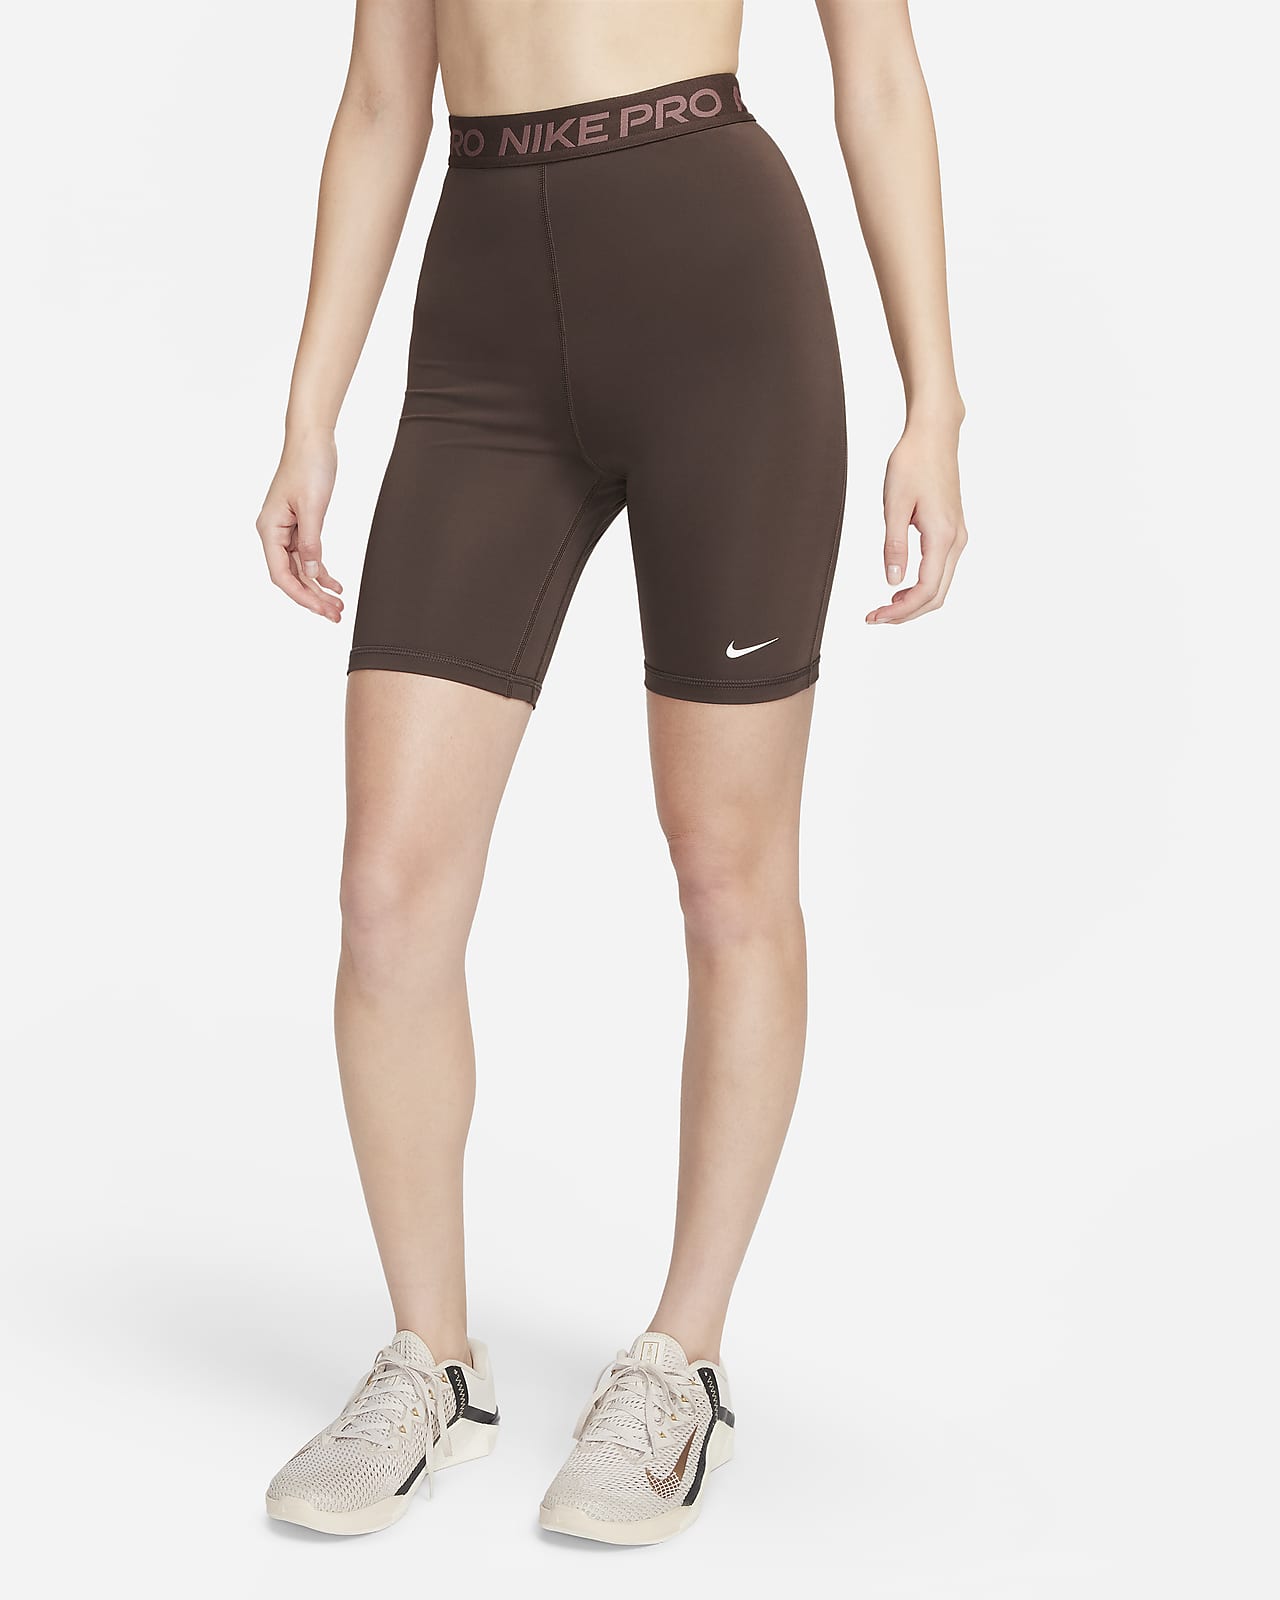 Nike Pro Women's 8cm (approx.) Shorts. Nike RO